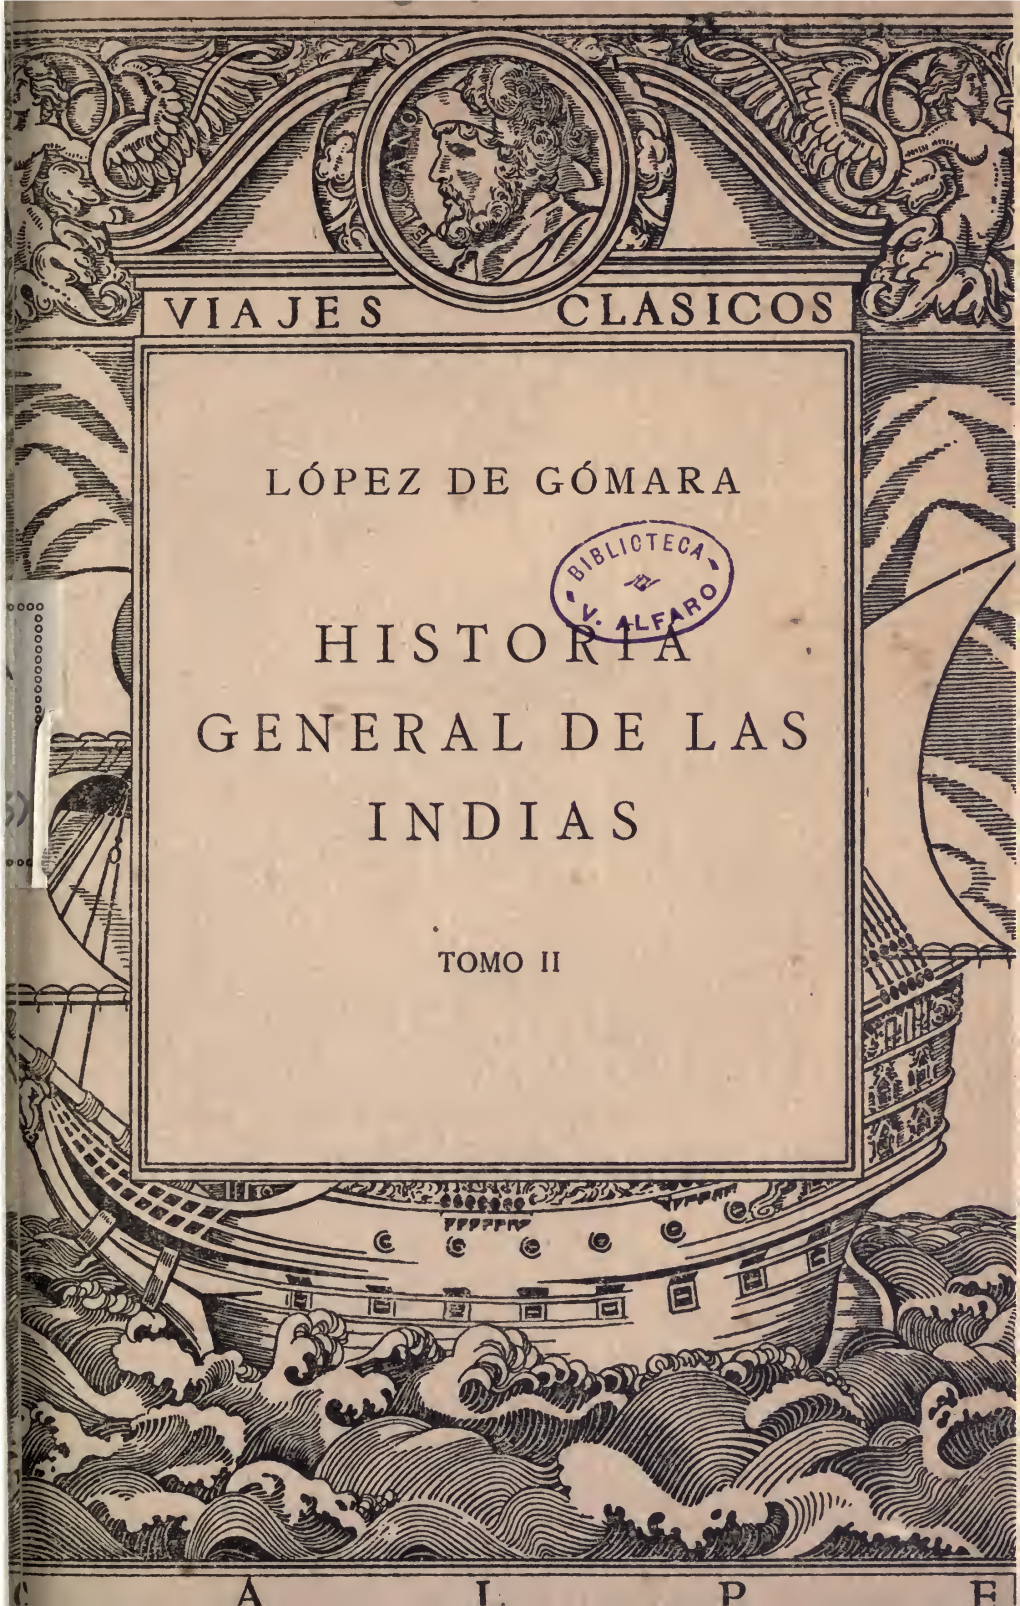 Historia General De Las Indias